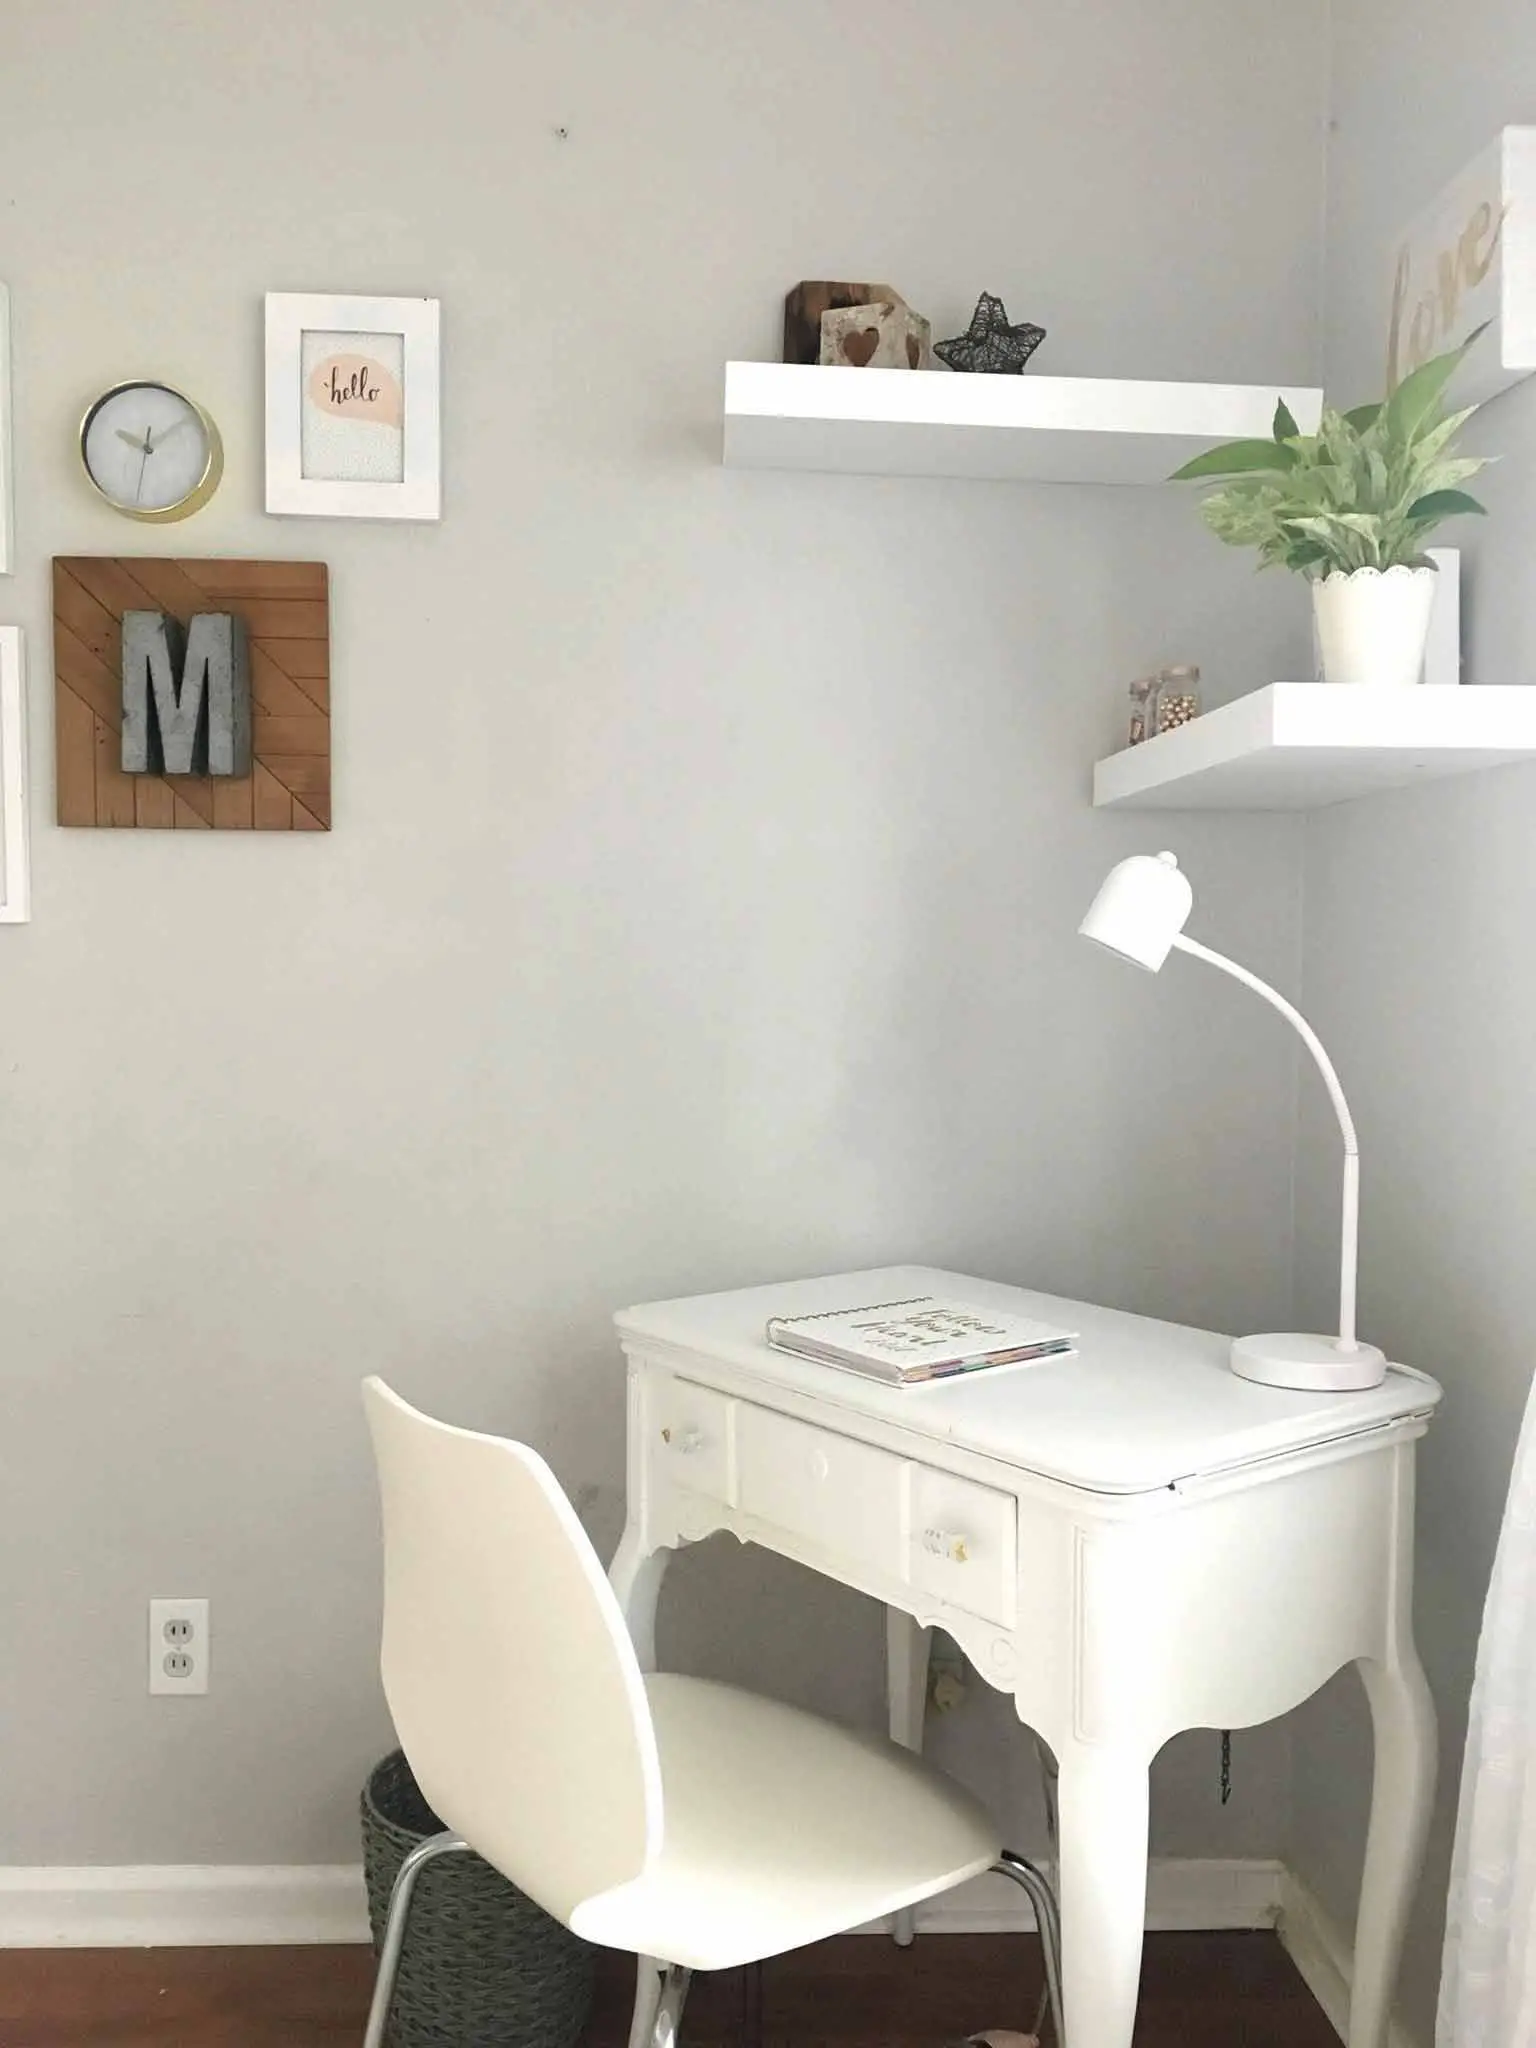 Desk in the corner of the room - modern boho tween bedroom - That Homebird Life Blog